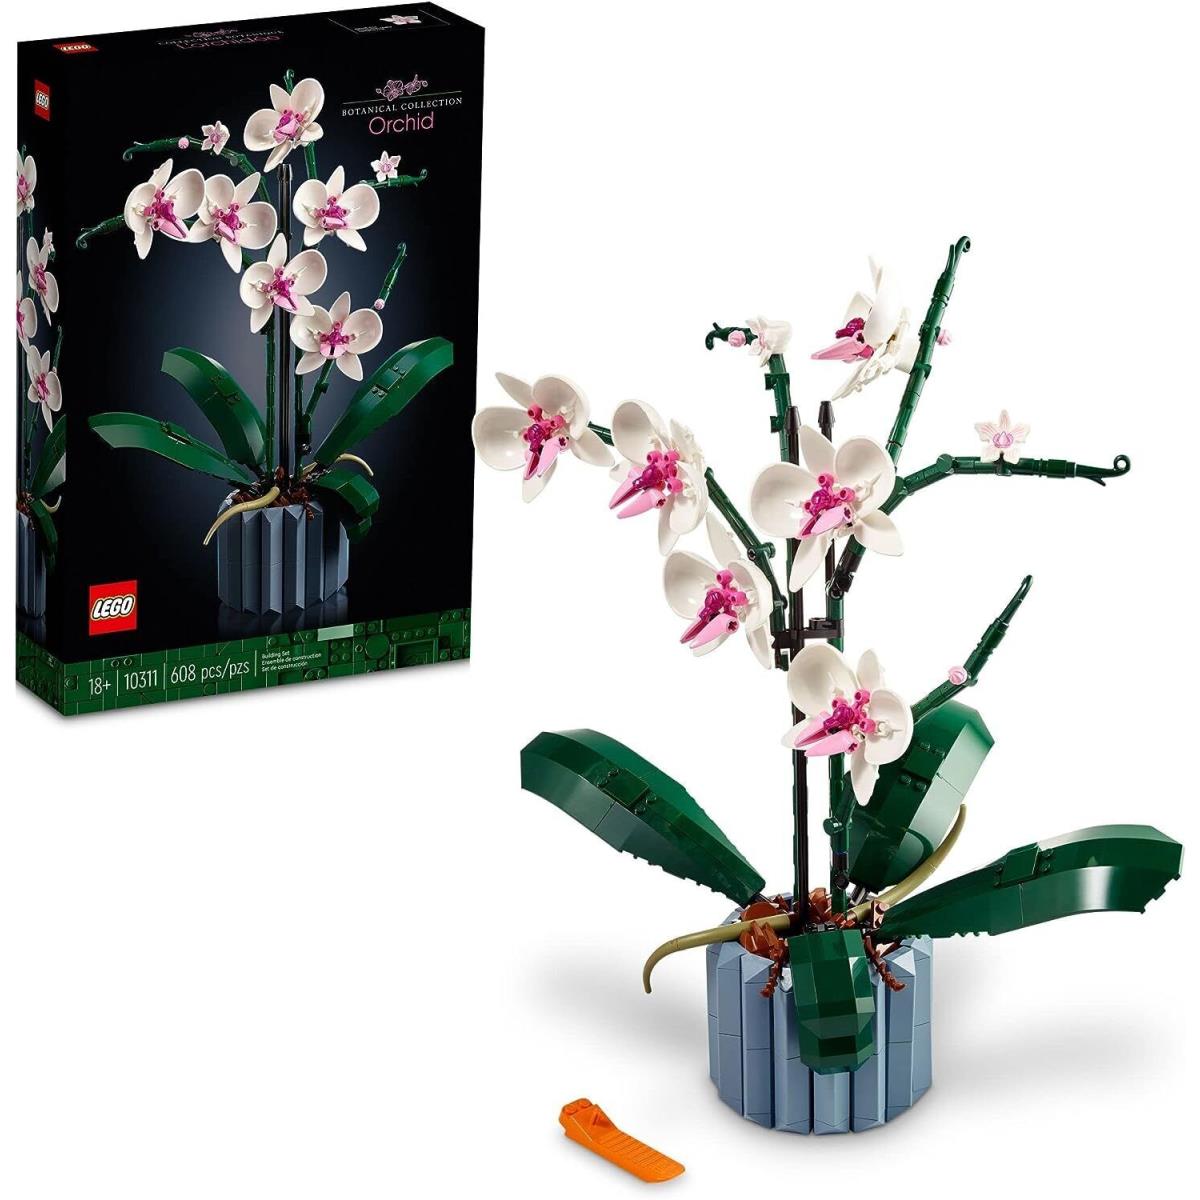 Lego Orchid 10311 Artificial Plant Decor Building Set W Flowers 608 Pieces